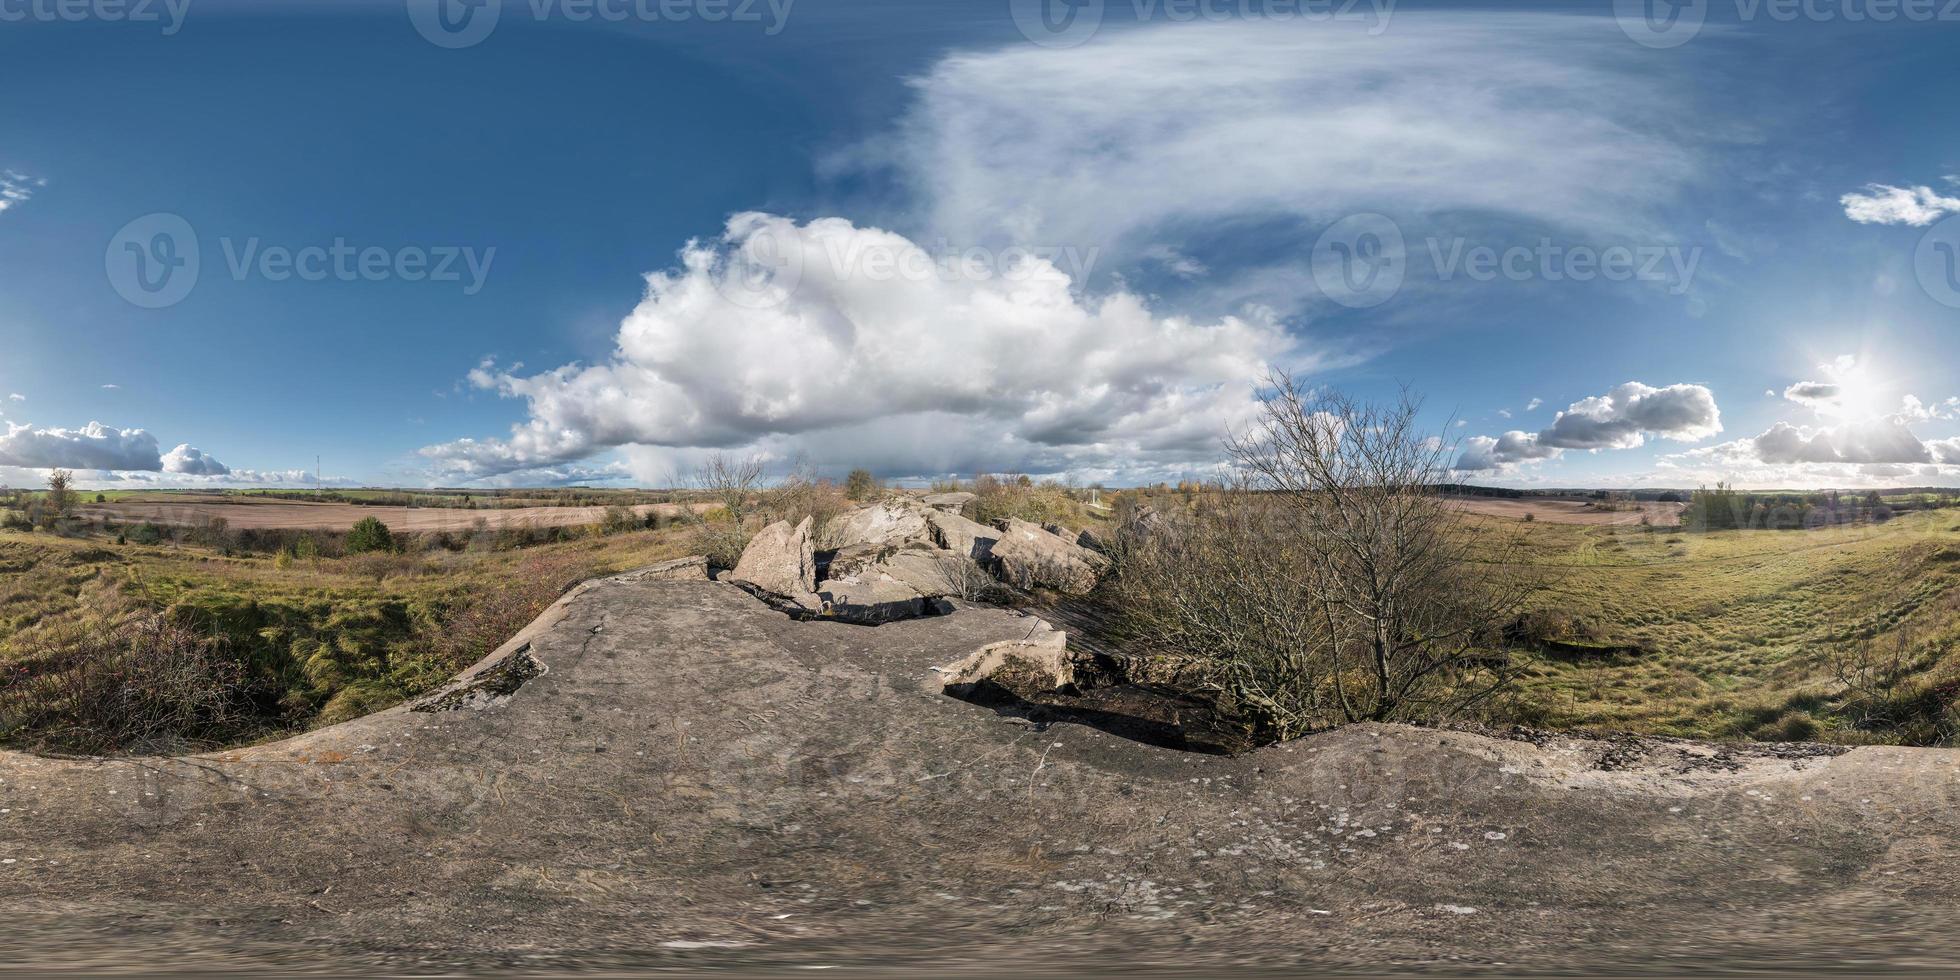 panorama esférico equirretangular completo 360 como plano de fundo. tempestade se aproximando na fortaleza militar em ruínas da primeira guerra mundial. foto